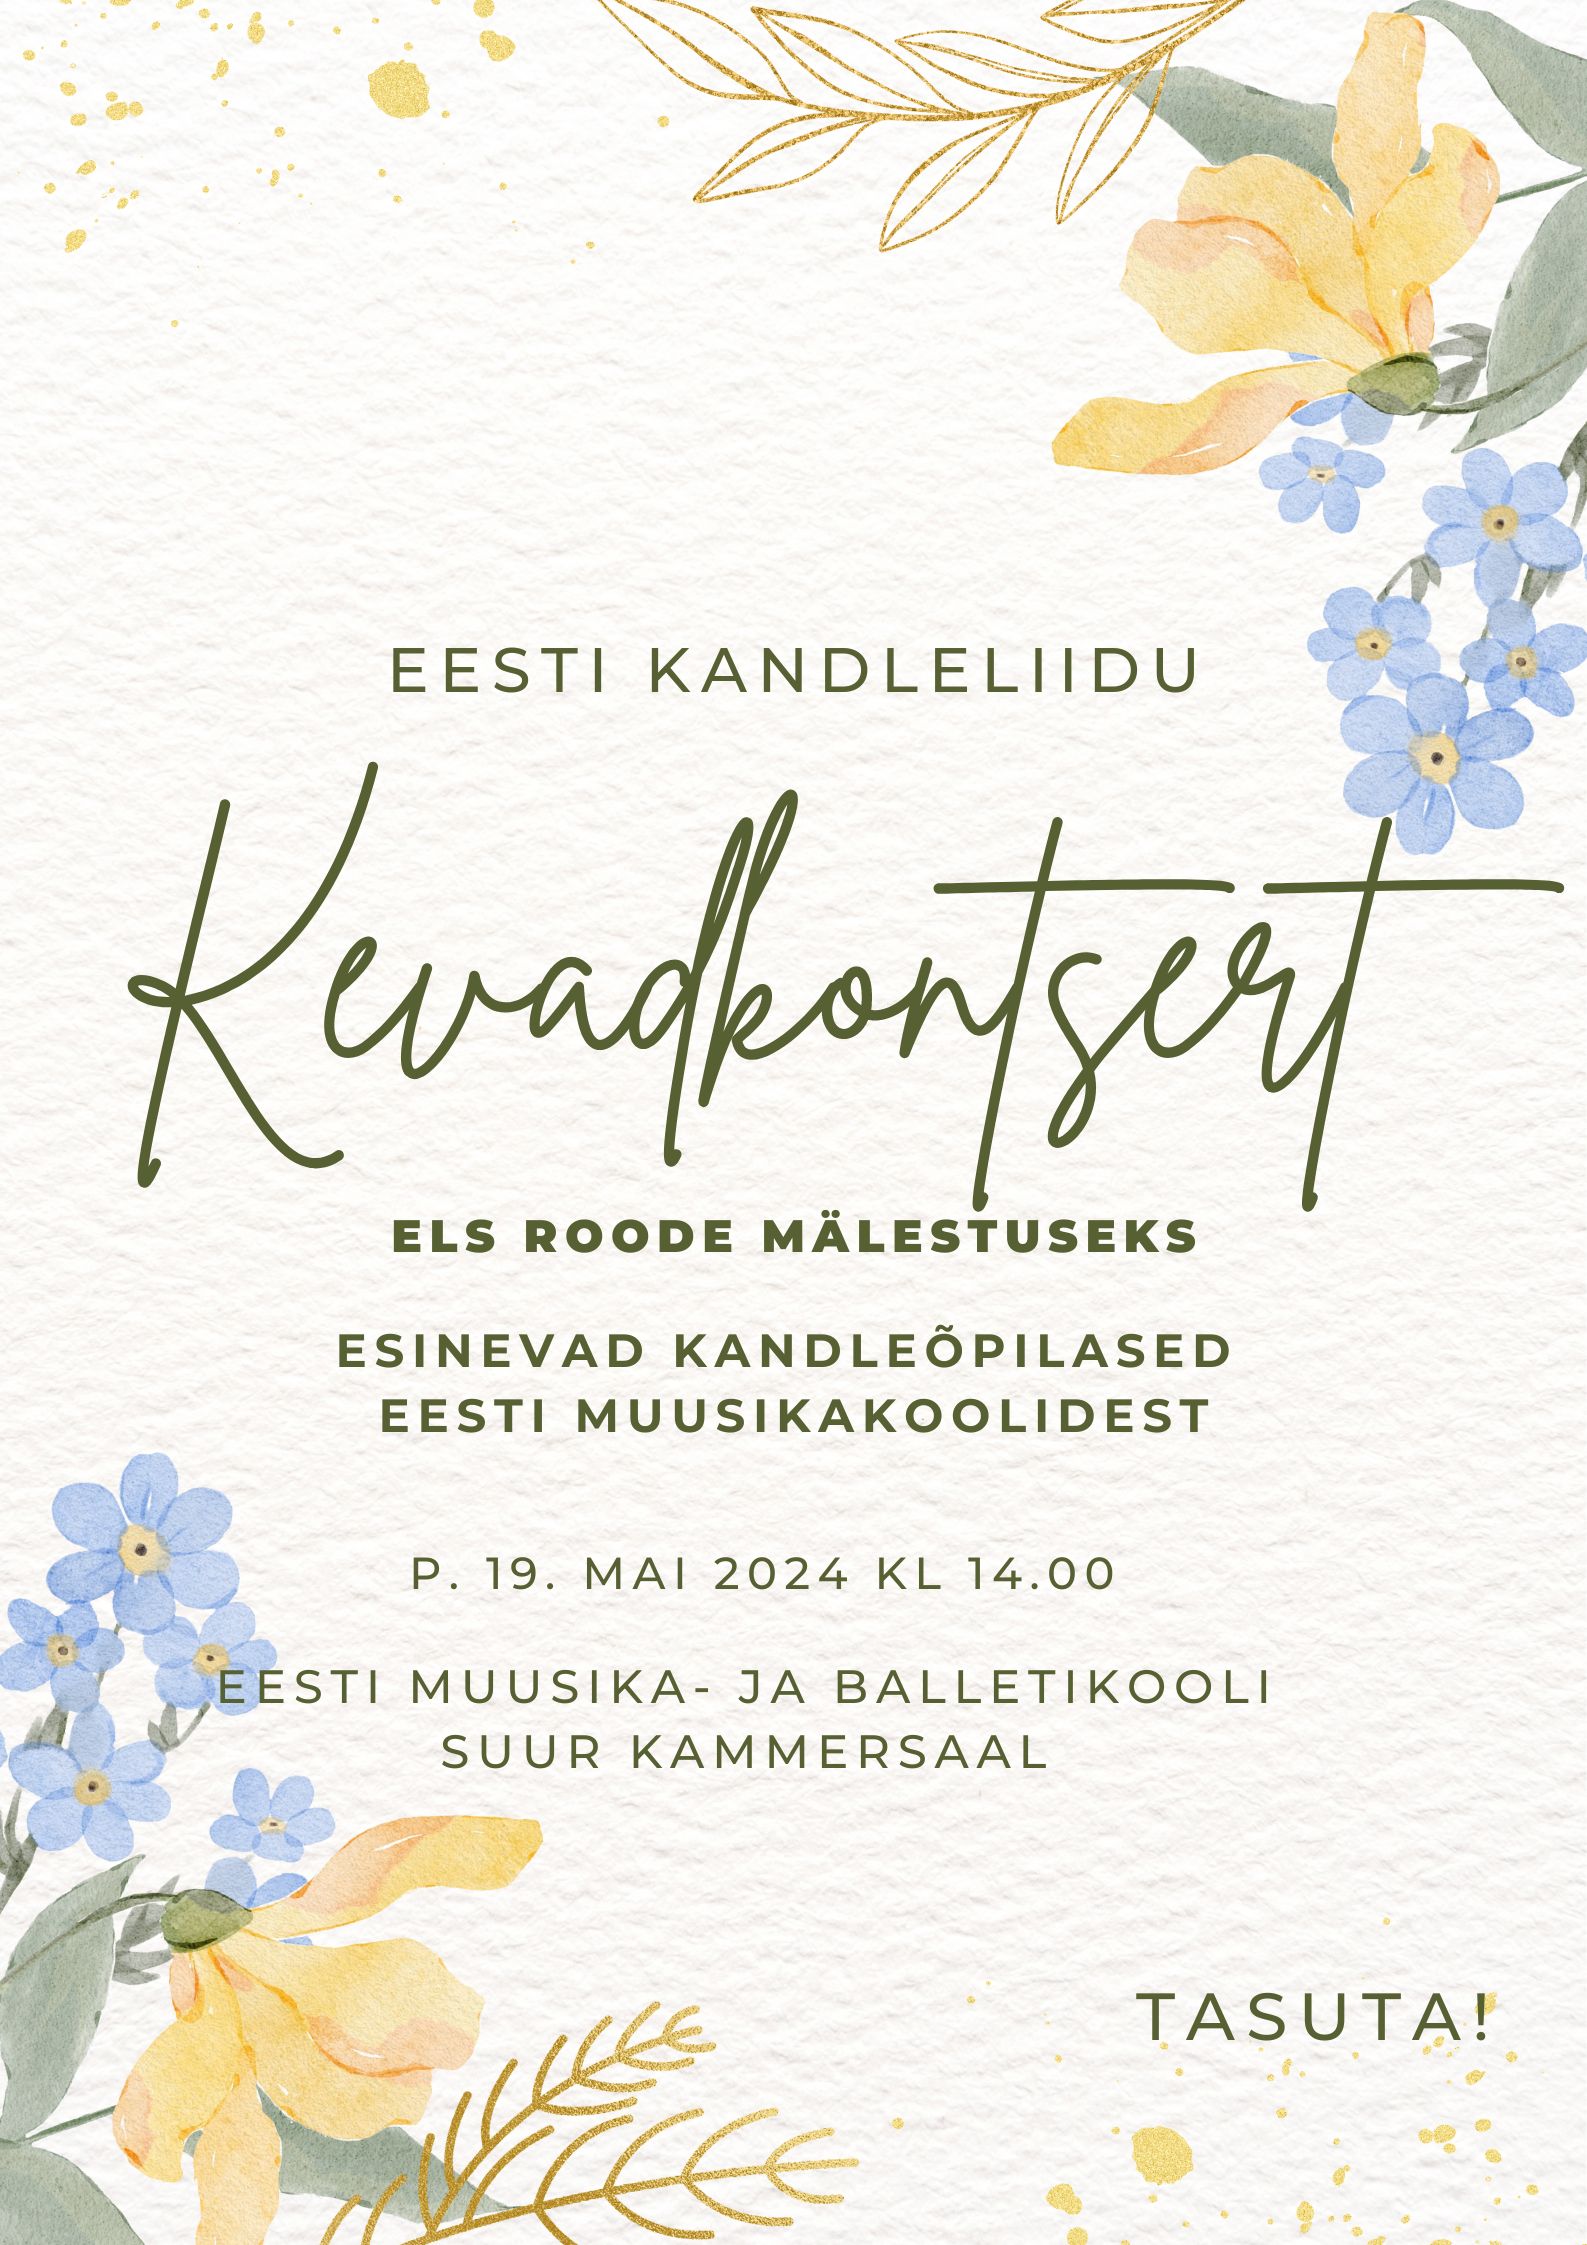 Sel aastal on Eesti Kandleliidu kevadkontsert pühendatud Els Roode mälestuseks, kes saanuks sel suvel 90. Sel puhul kutsume esinema muusikakoolide kandleõpilasi